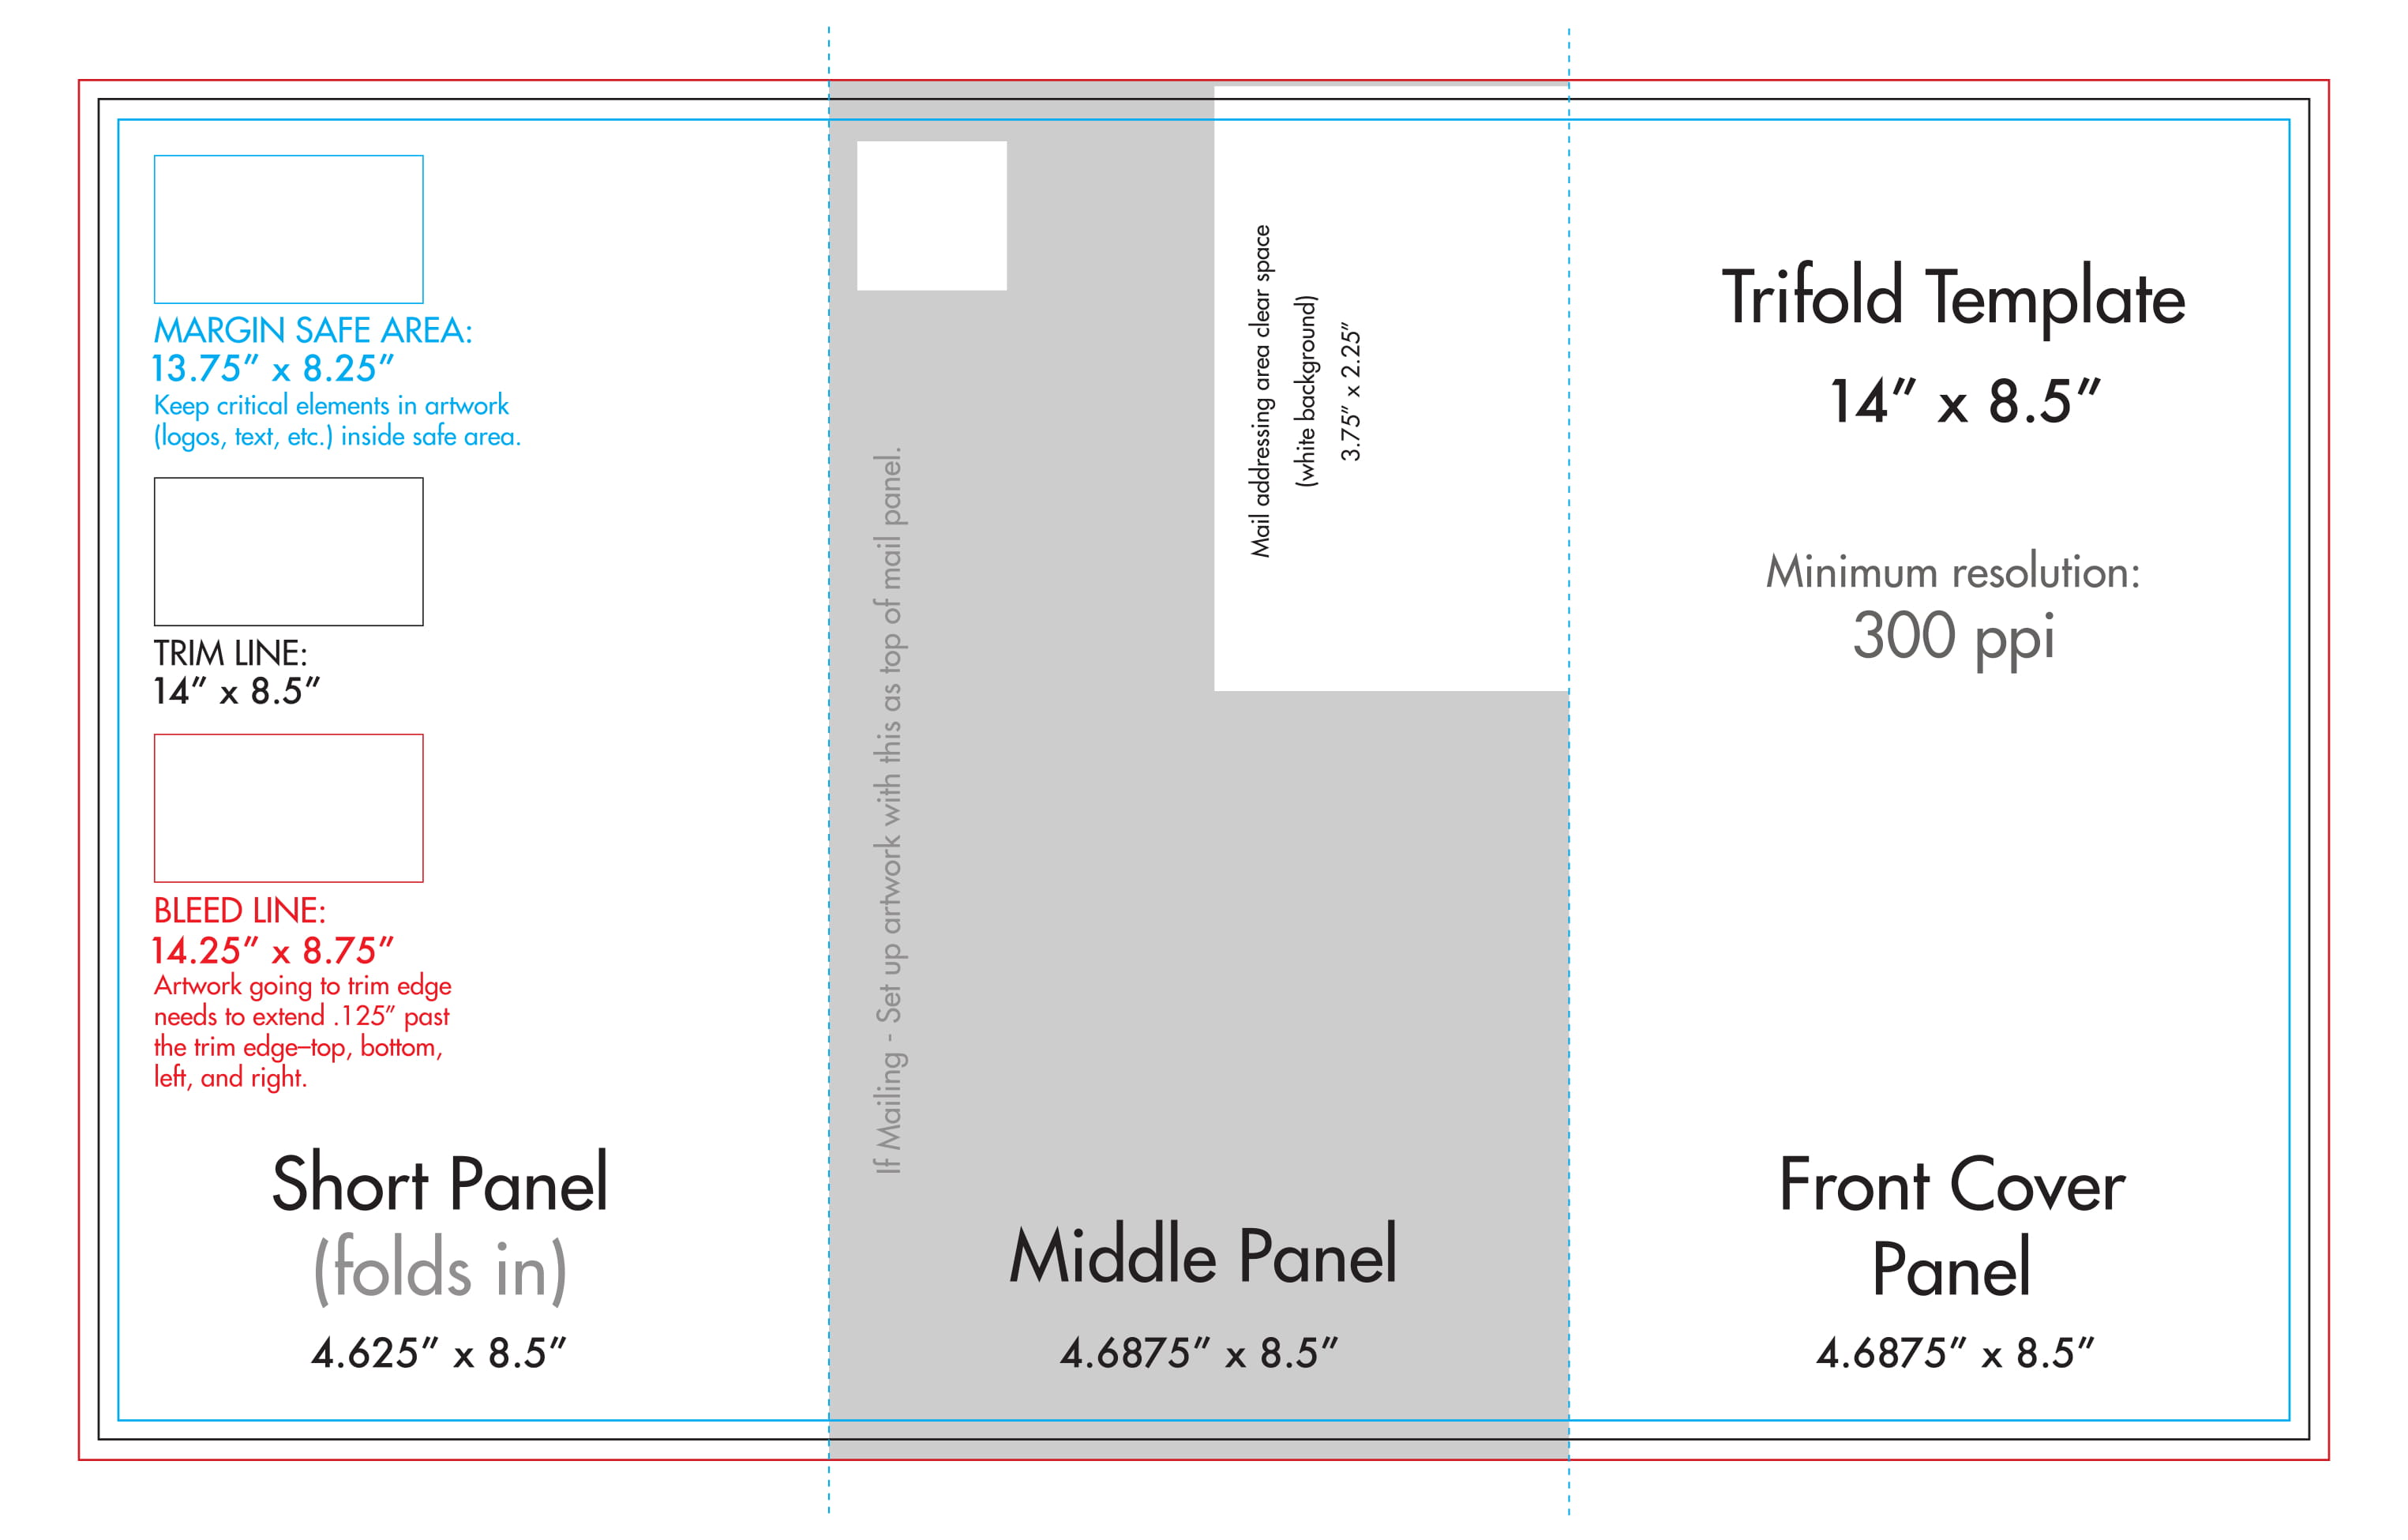 8.5 x 11 Brochure Templates Print 8.5 x 11 Trifold Templates Free U